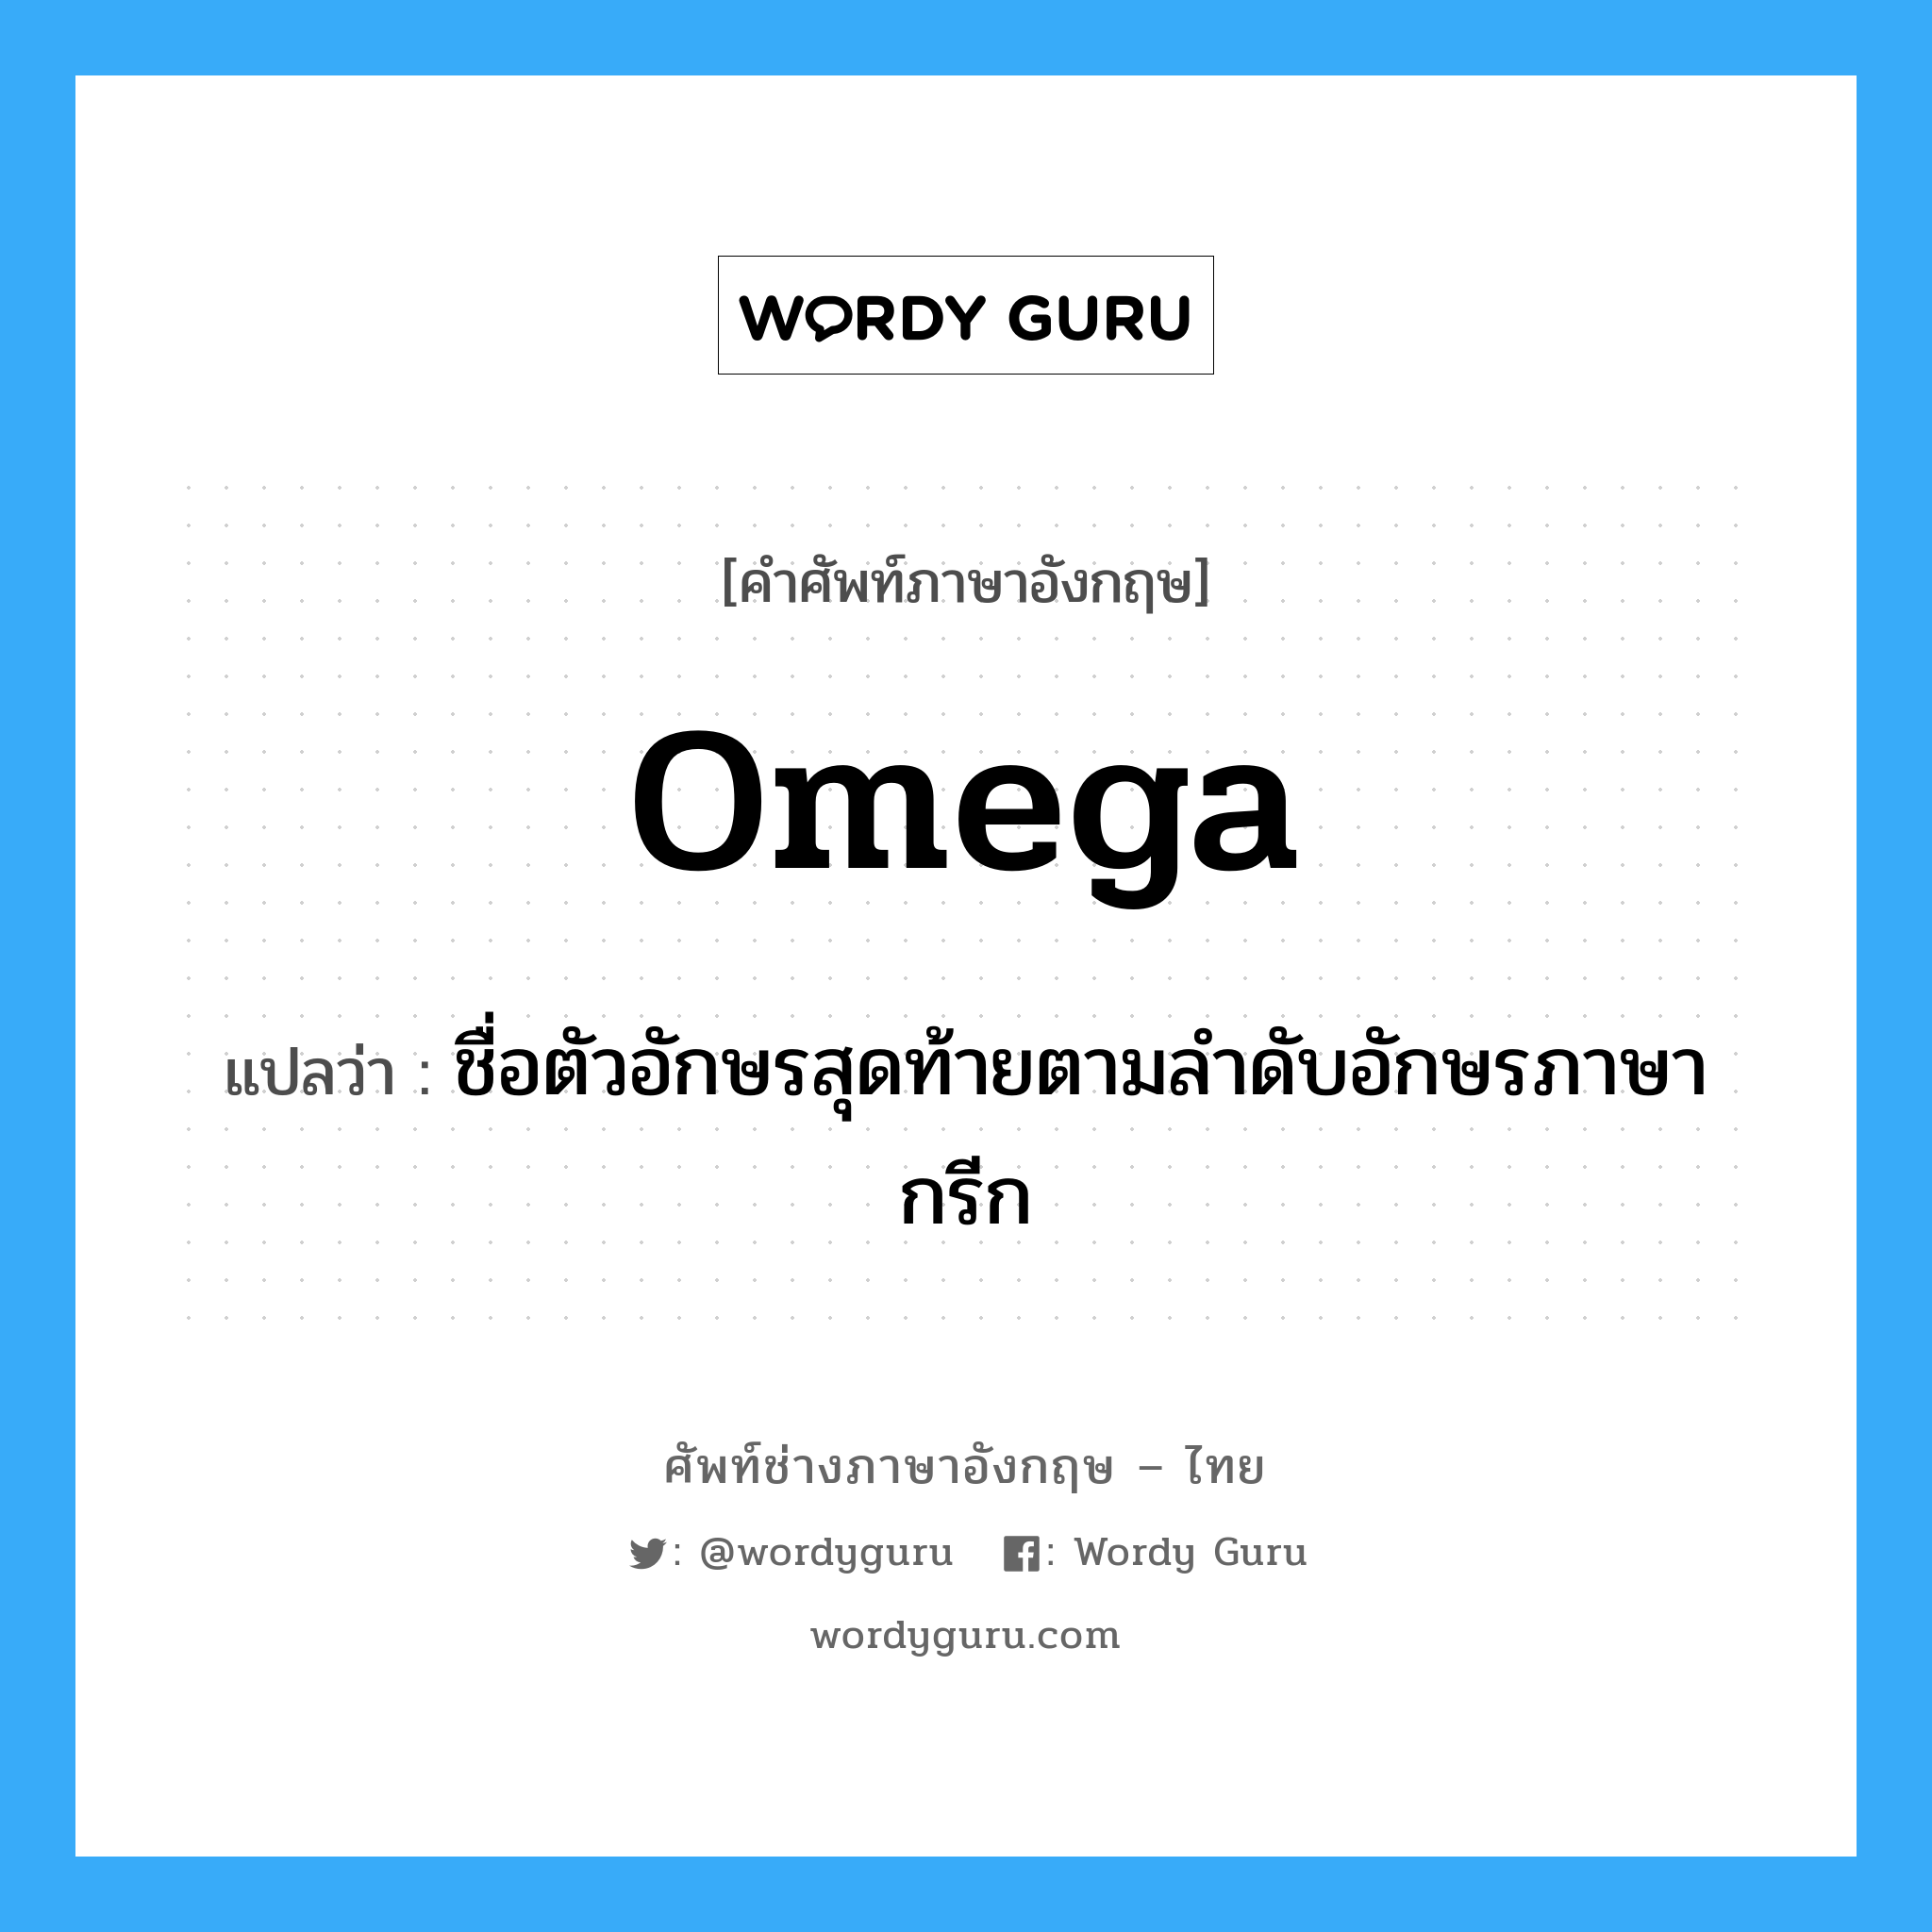 ชื่อตัวอักษรสุดท้ายตามลำดับอักษรภาษากรีก ภาษาอังกฤษ?, คำศัพท์ช่างภาษาอังกฤษ - ไทย ชื่อตัวอักษรสุดท้ายตามลำดับอักษรภาษากรีก คำศัพท์ภาษาอังกฤษ ชื่อตัวอักษรสุดท้ายตามลำดับอักษรภาษากรีก แปลว่า omega